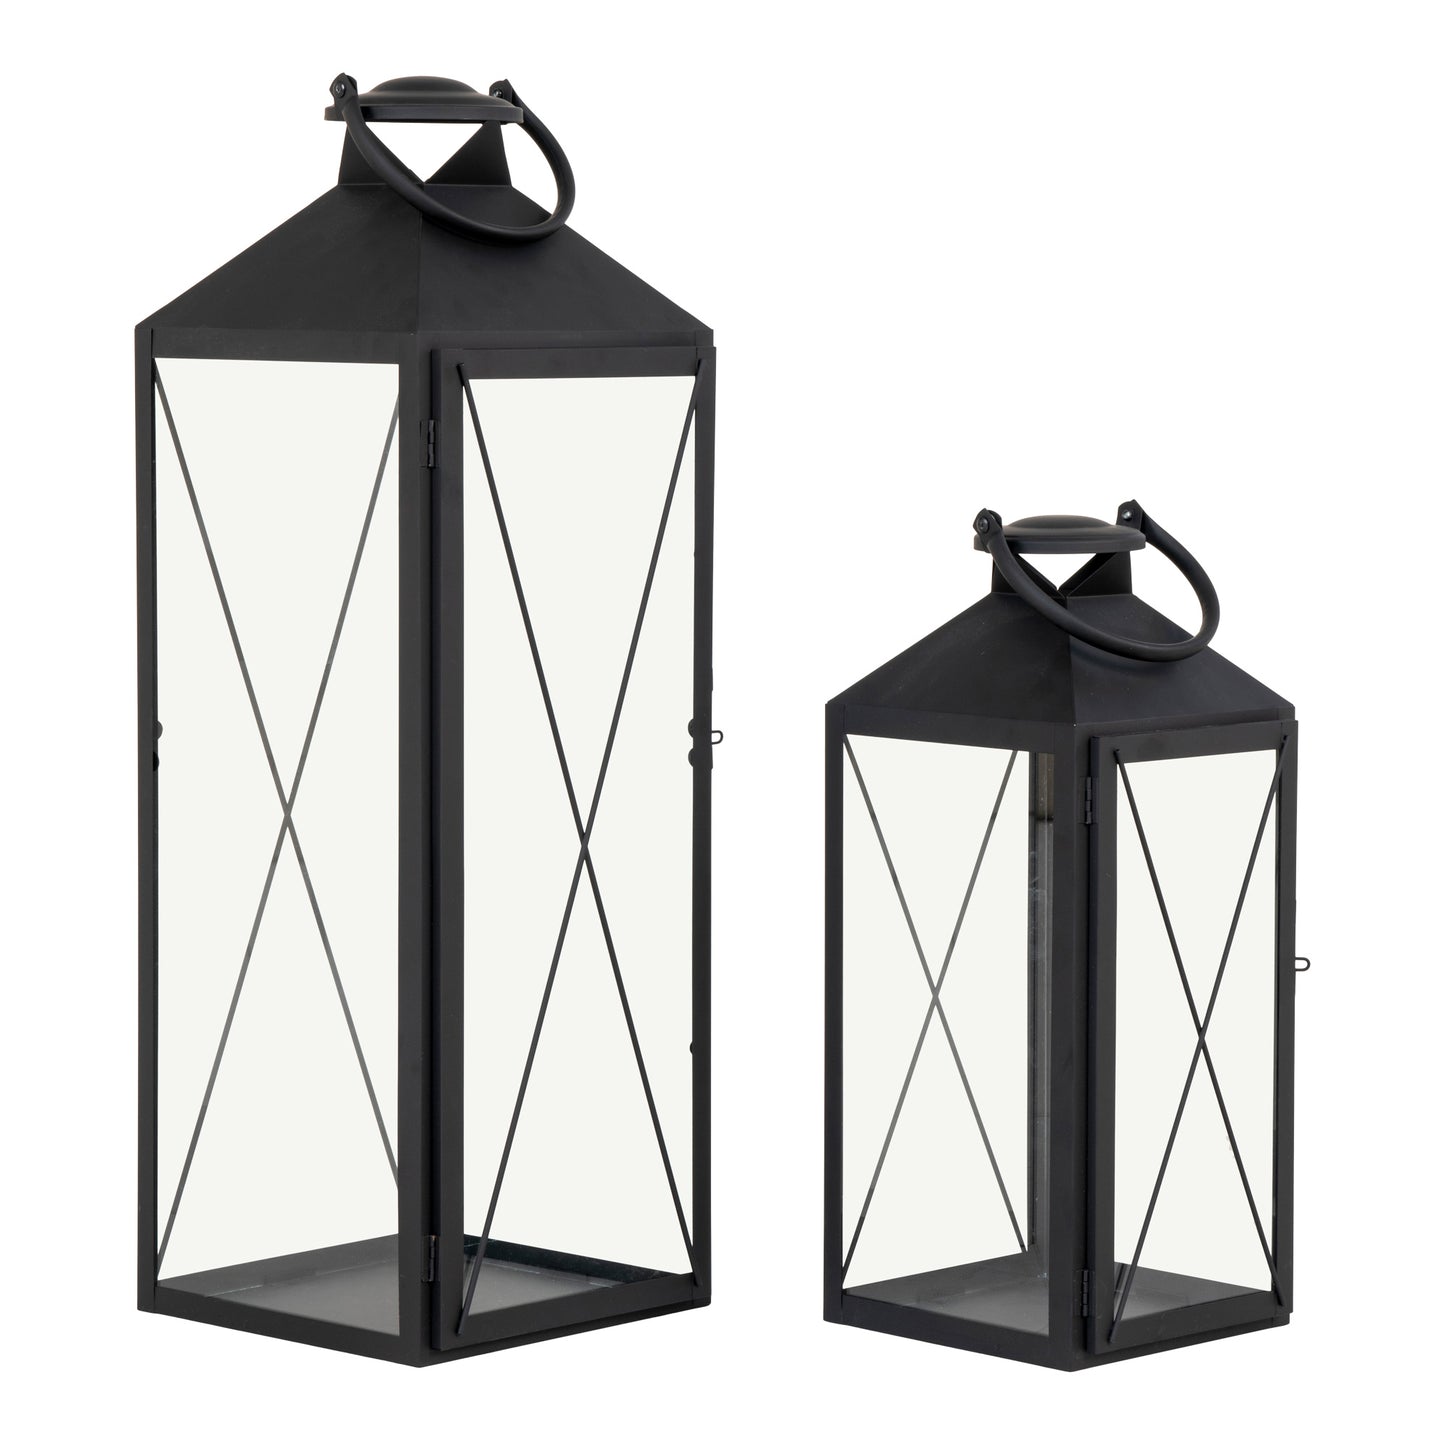 Casa Lanterne, sæt af 2 - Lanterne i stål og glas, sort, sæt af 2